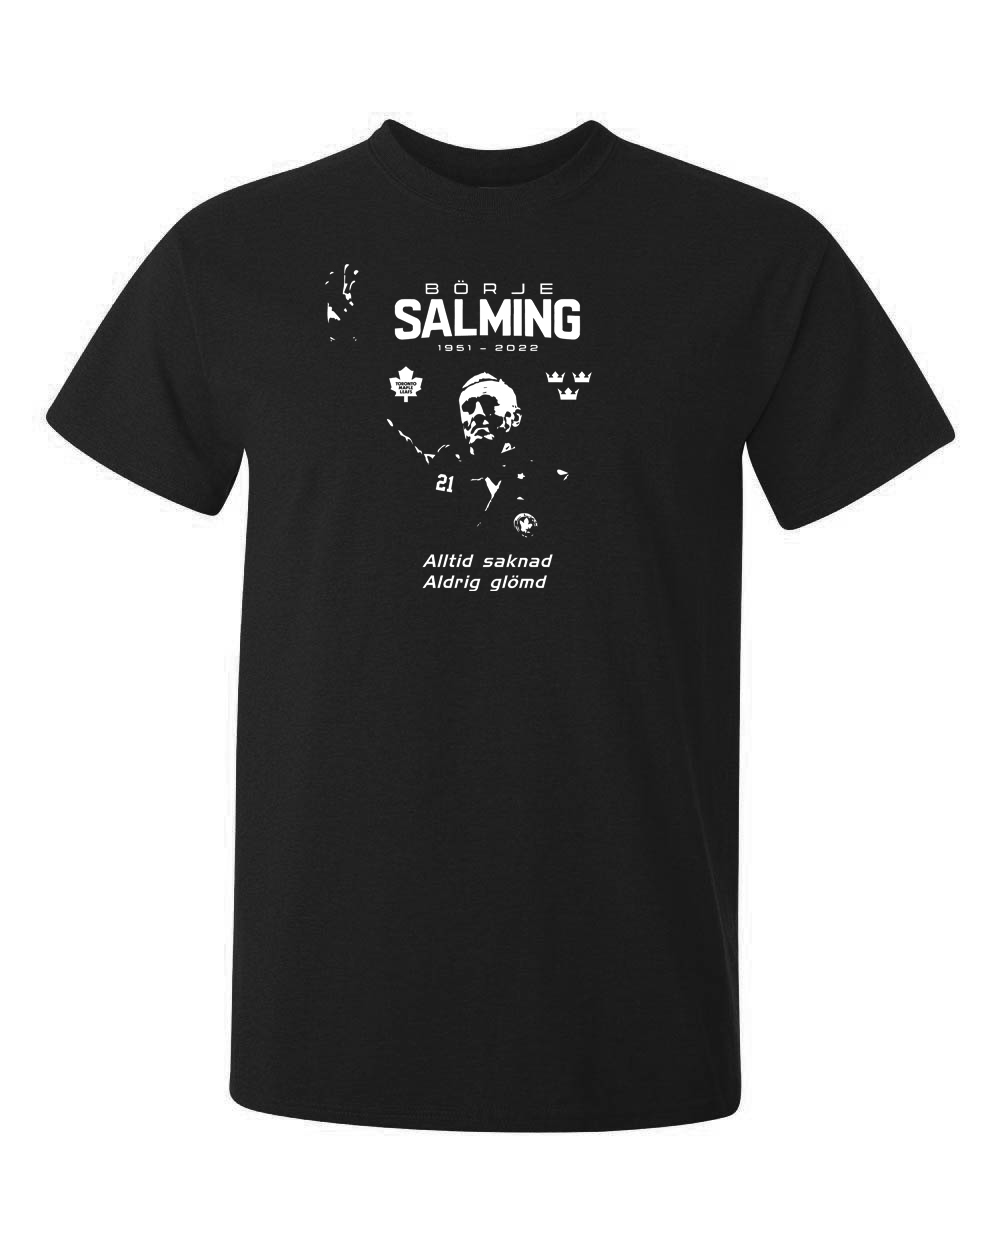 Börje Salming, en av våra stora hjältar tryckt som minne på en svart t-shirt.